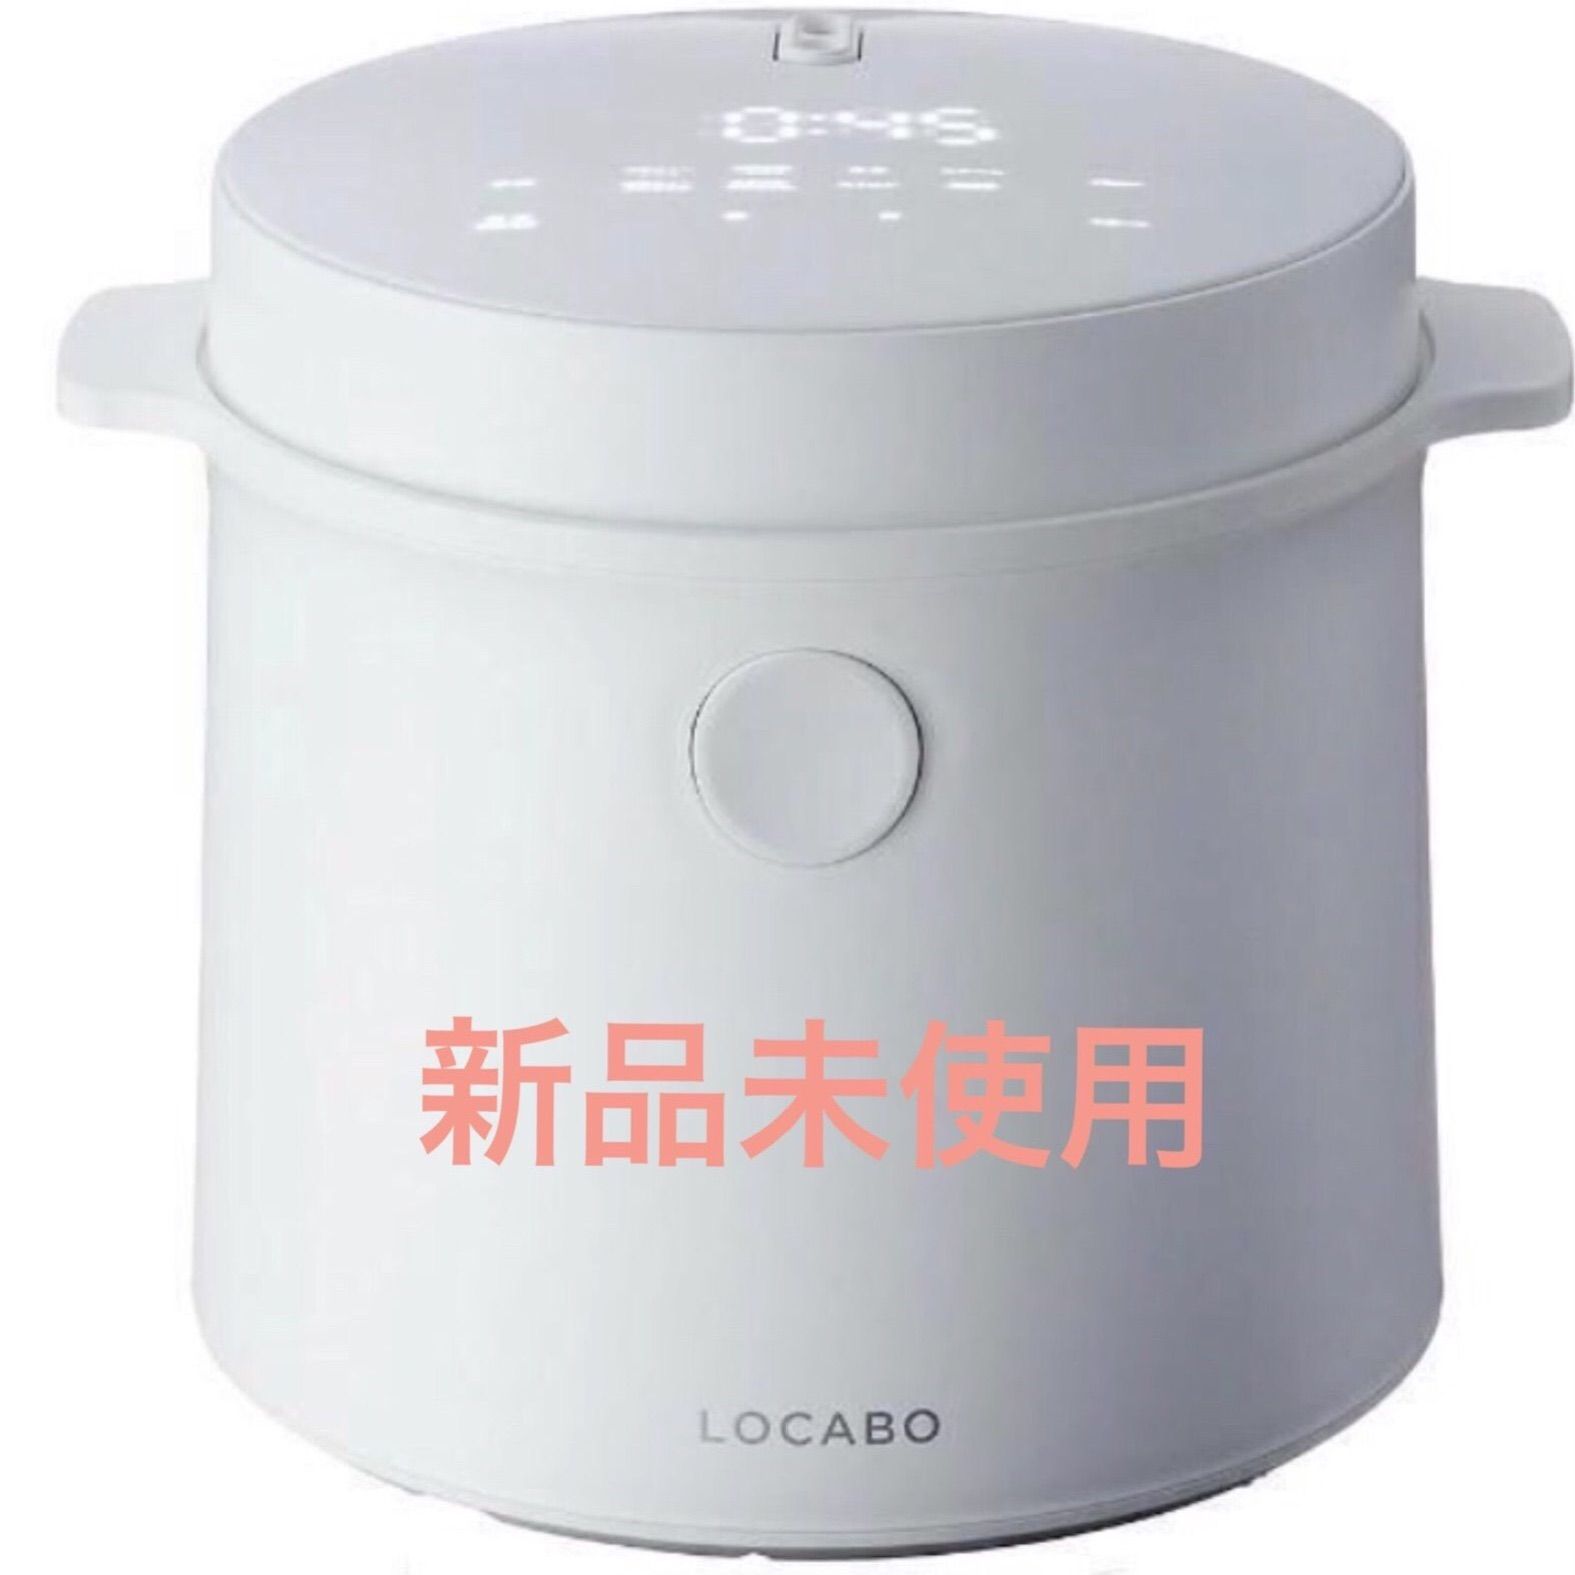 新品未使用】LOCABO 糖質カット炊飯器 ロカボ JM-C20E-B - 家電